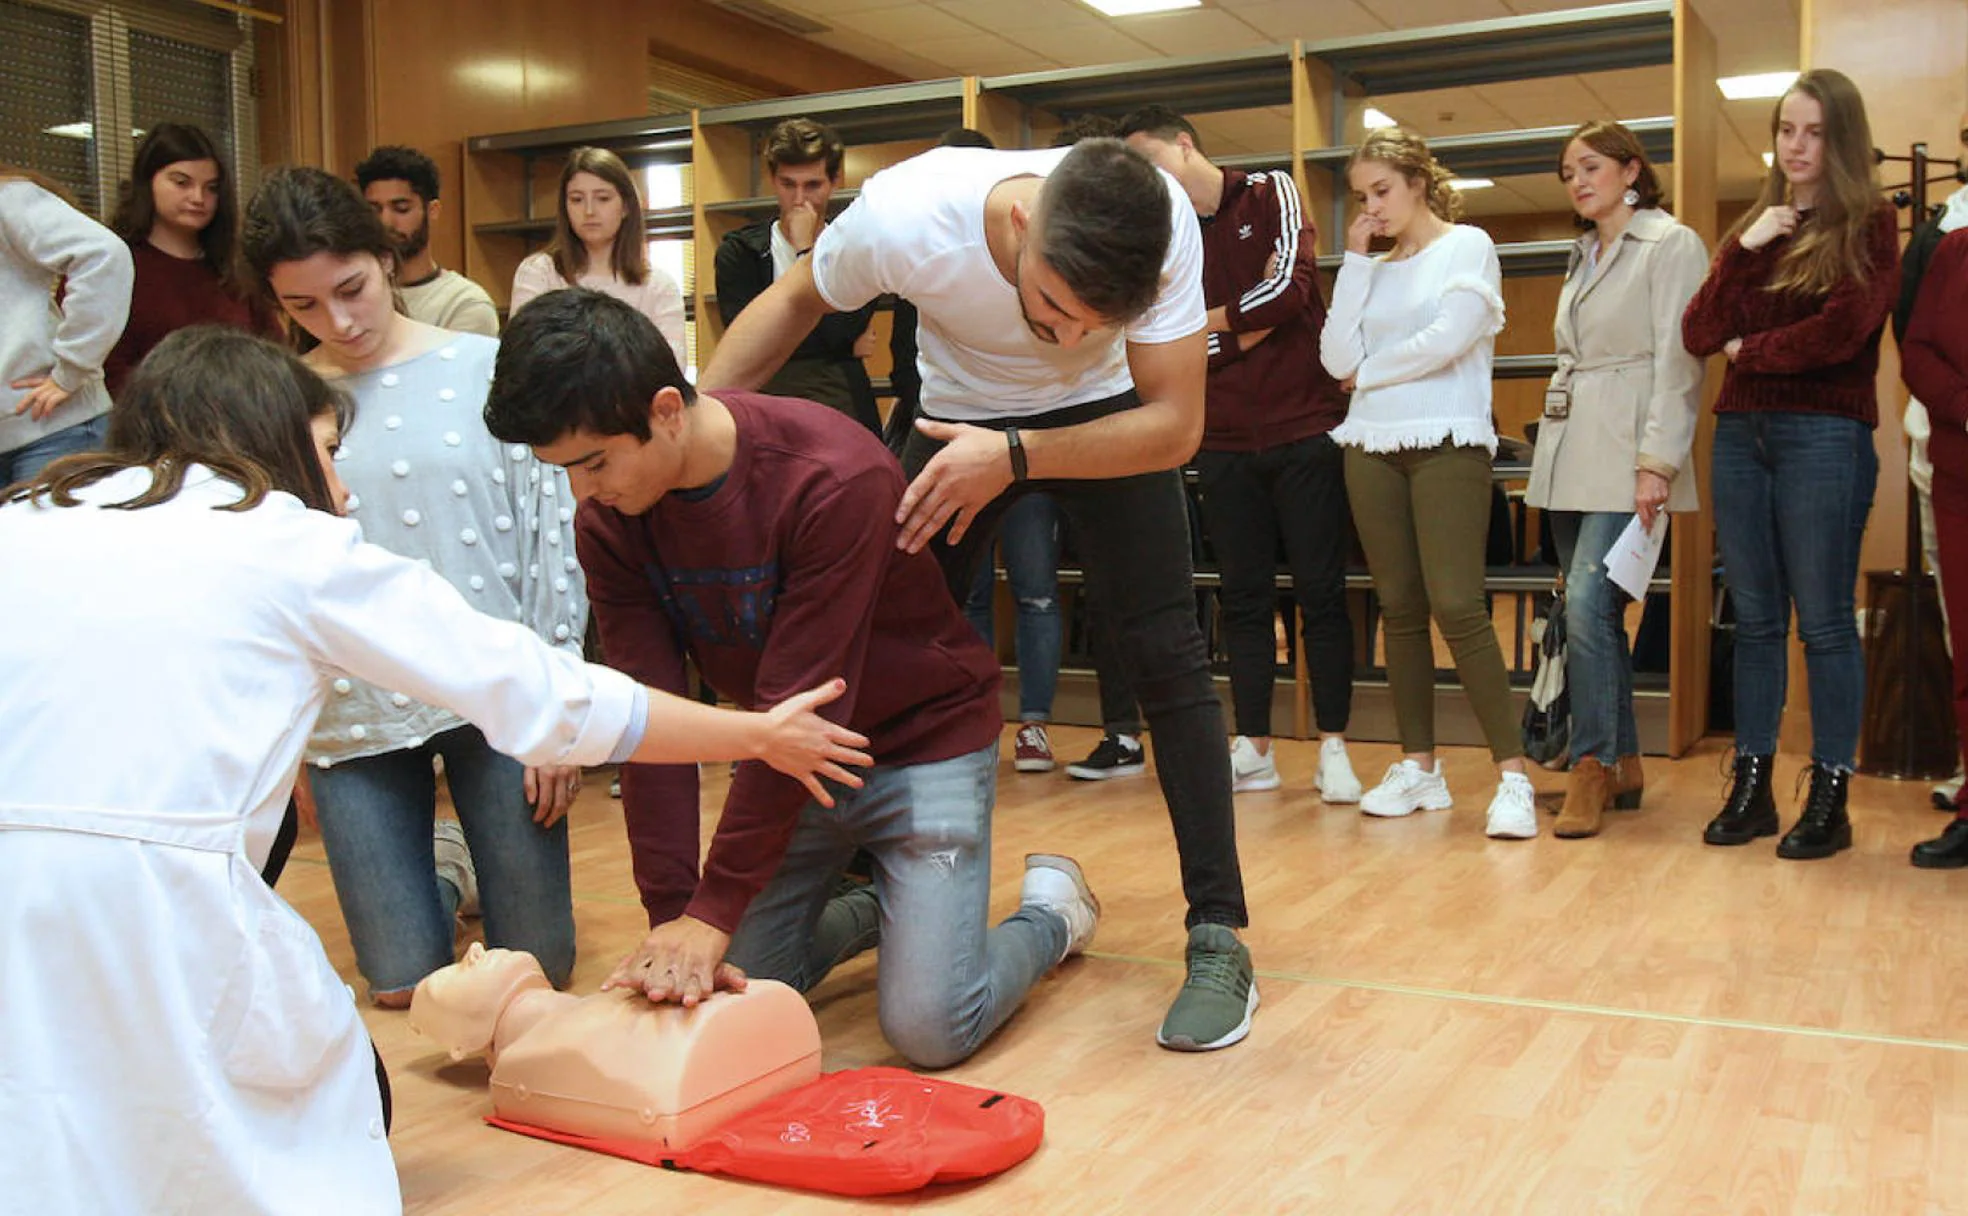 Taller celebrado en Ciencias de la Salud, en la Universidad de Valladolid, para que los estudiantes de Medicina y Enfermería aprendan a realizar RCP y maniobras anti atragantamientos. 